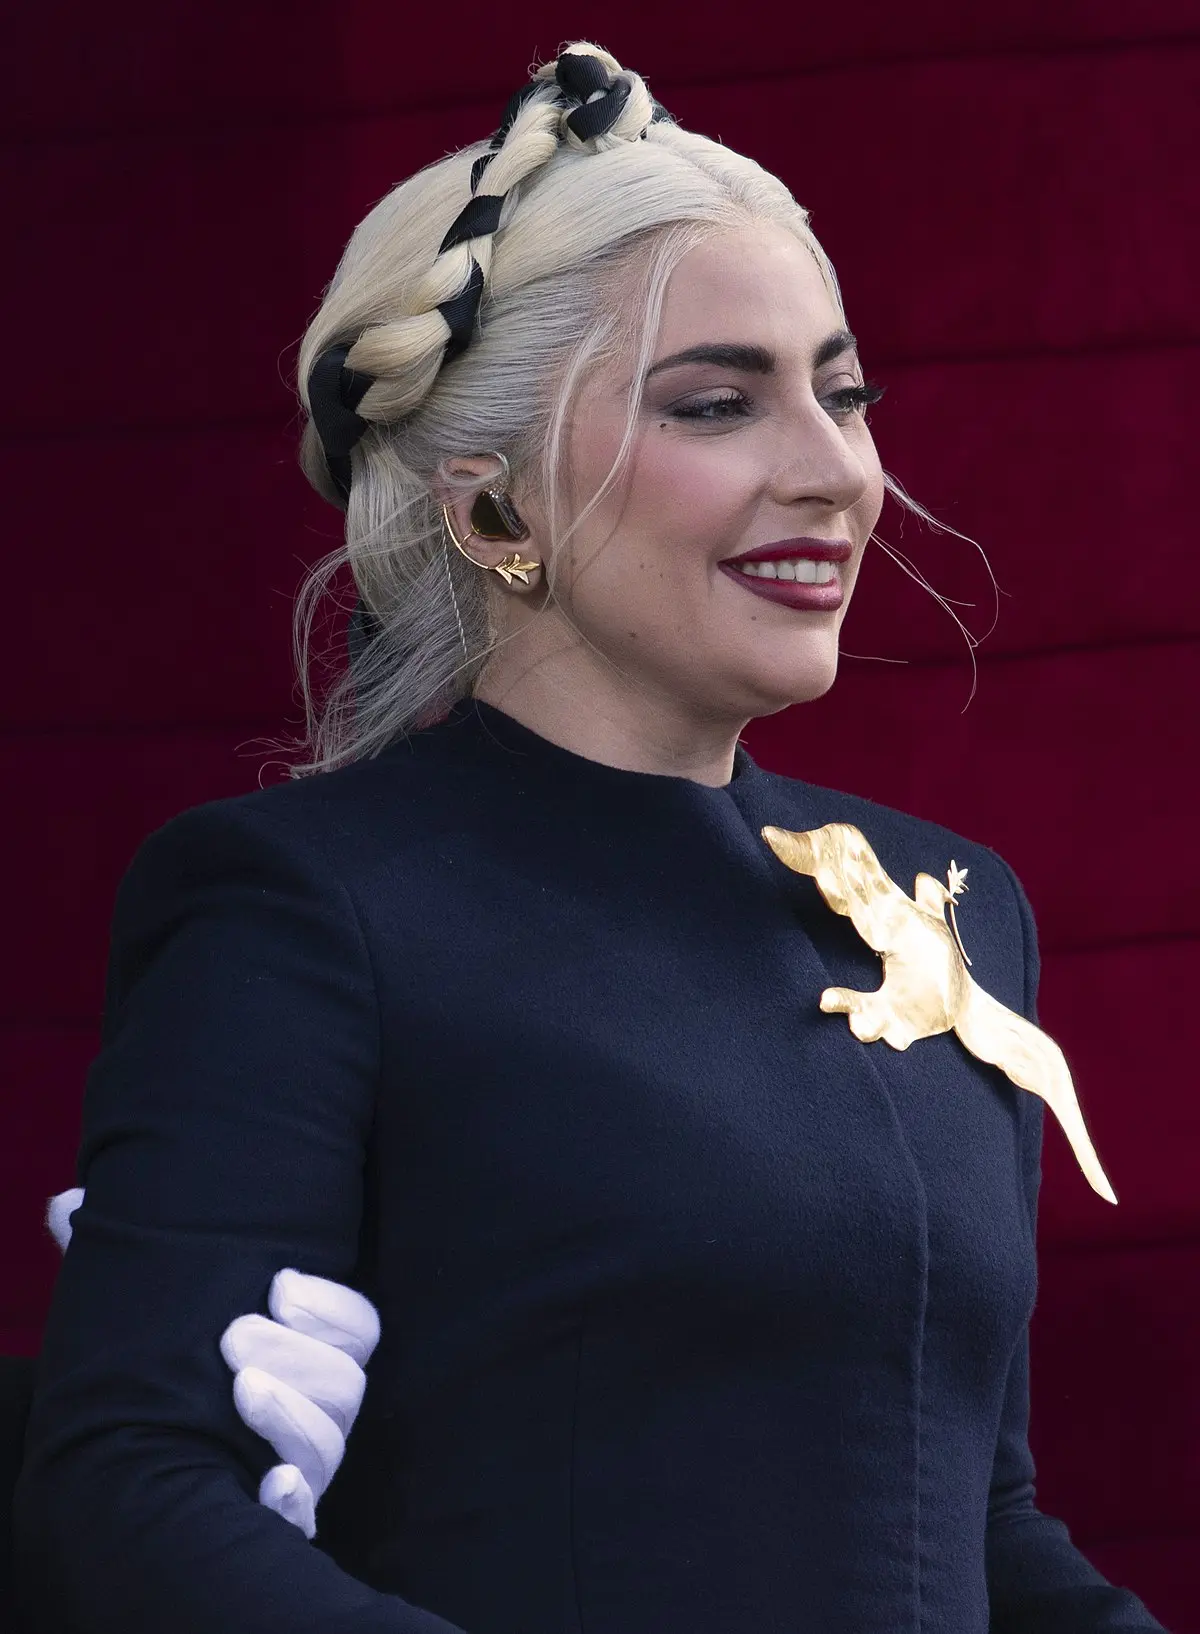 El Polémico Vestido De Carne De Lady Gaga: Moda Controvertida ...